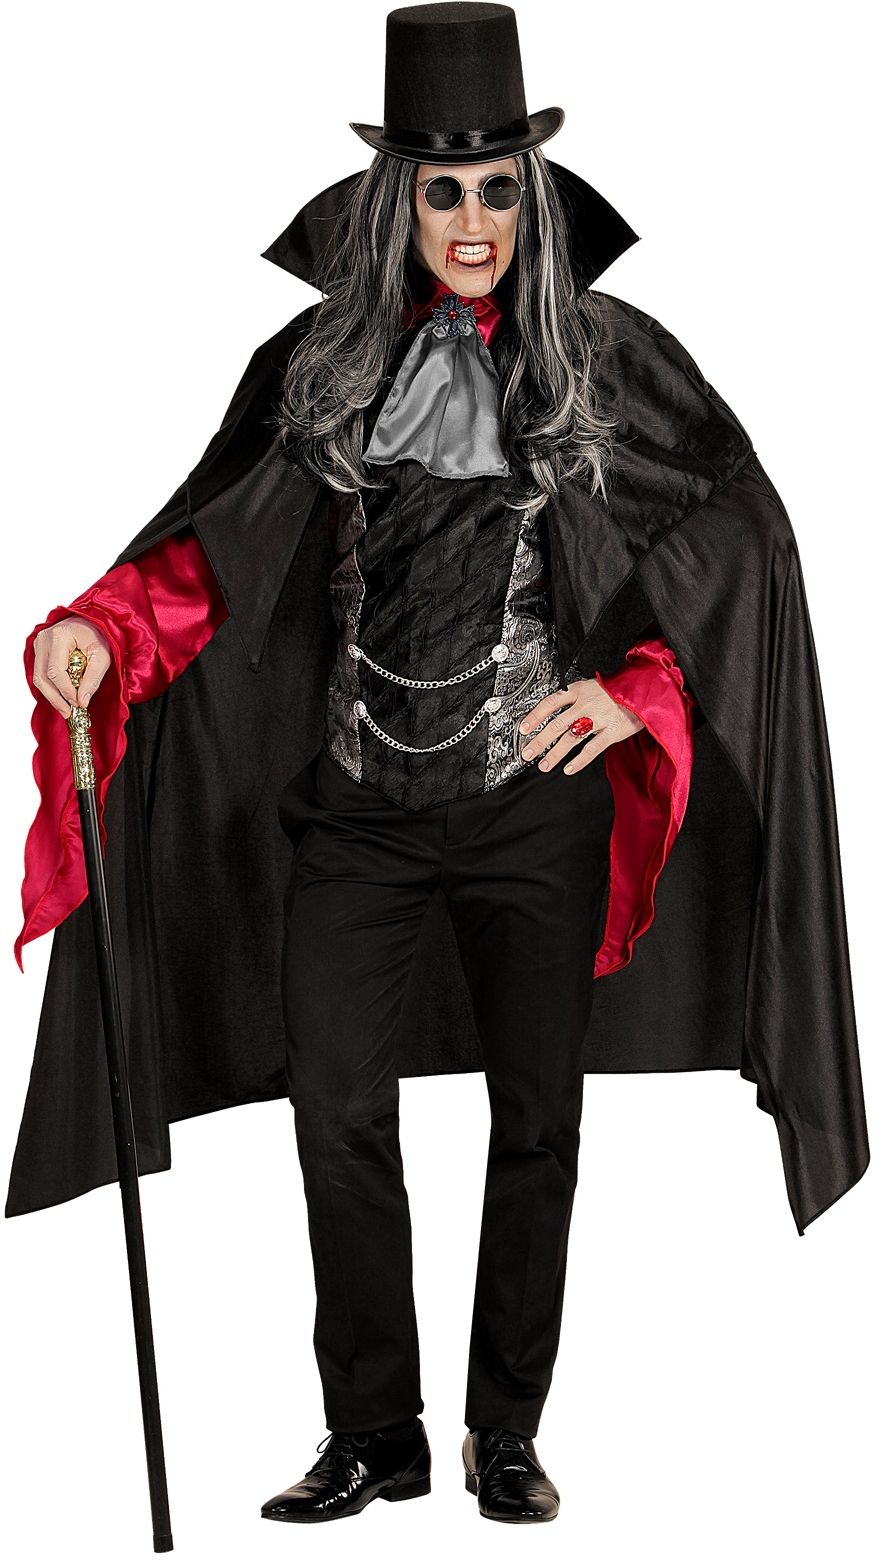 Hobart rommel Supermarkt Halloween vampier kostuum | Carnavalskleding.nl